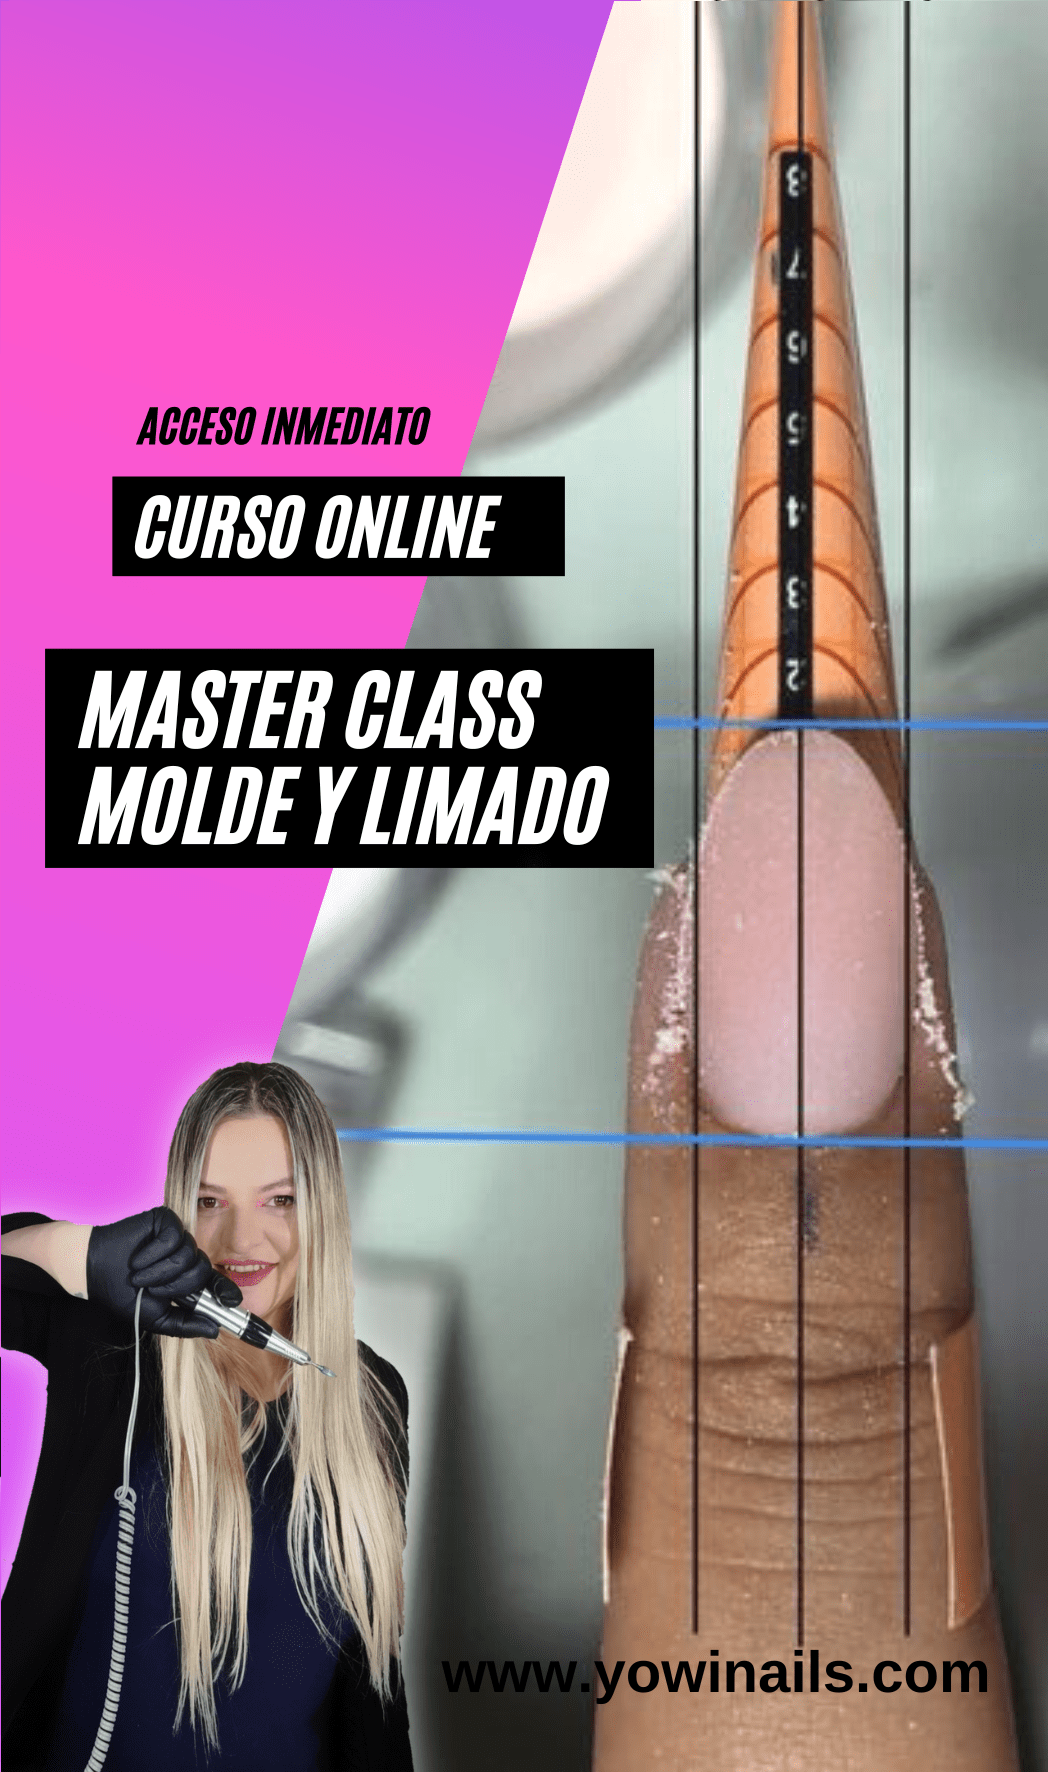 Molde y Limado – Master Class